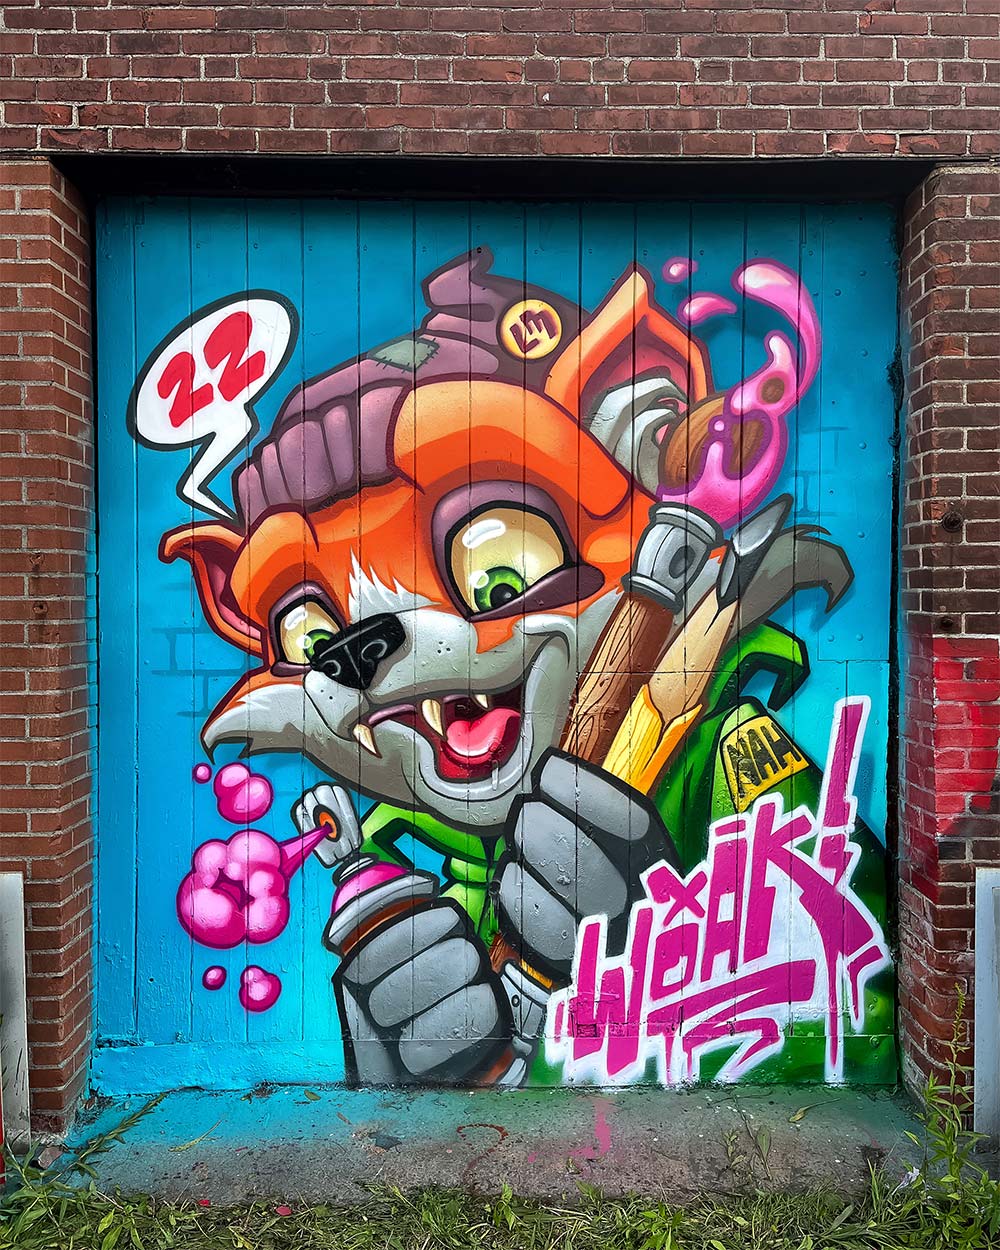 Woak One fox graffiti piece